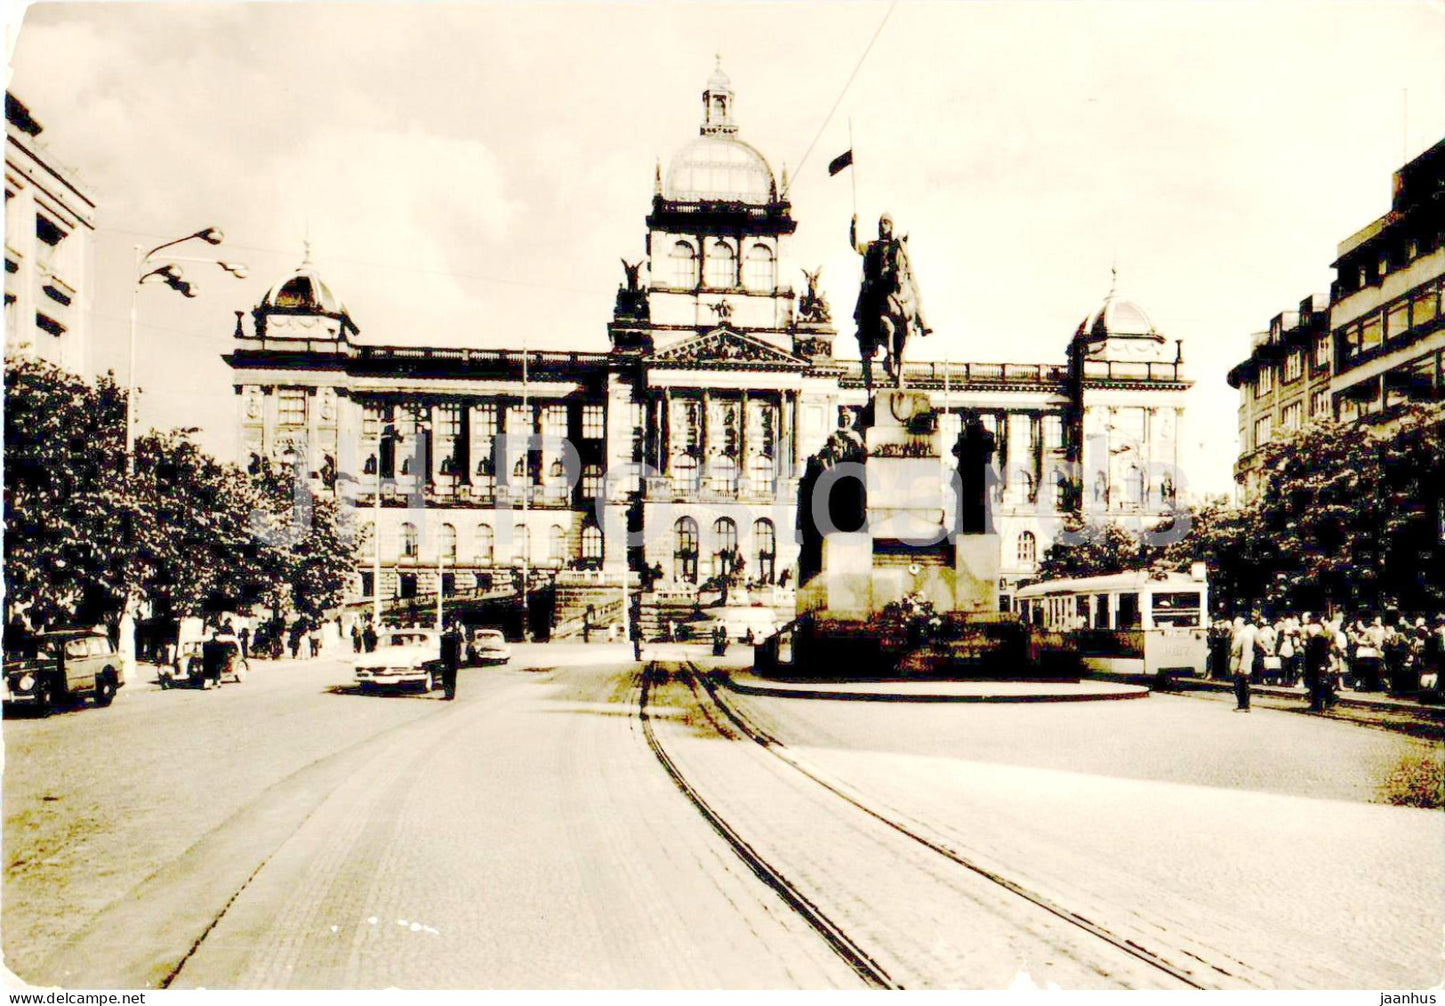 Praha - Prague - Narodni Museum - Nacional Museum on Wenceslas Square tram 1967 - Czech Republic - Czechoslovakia - used - JH Postcards